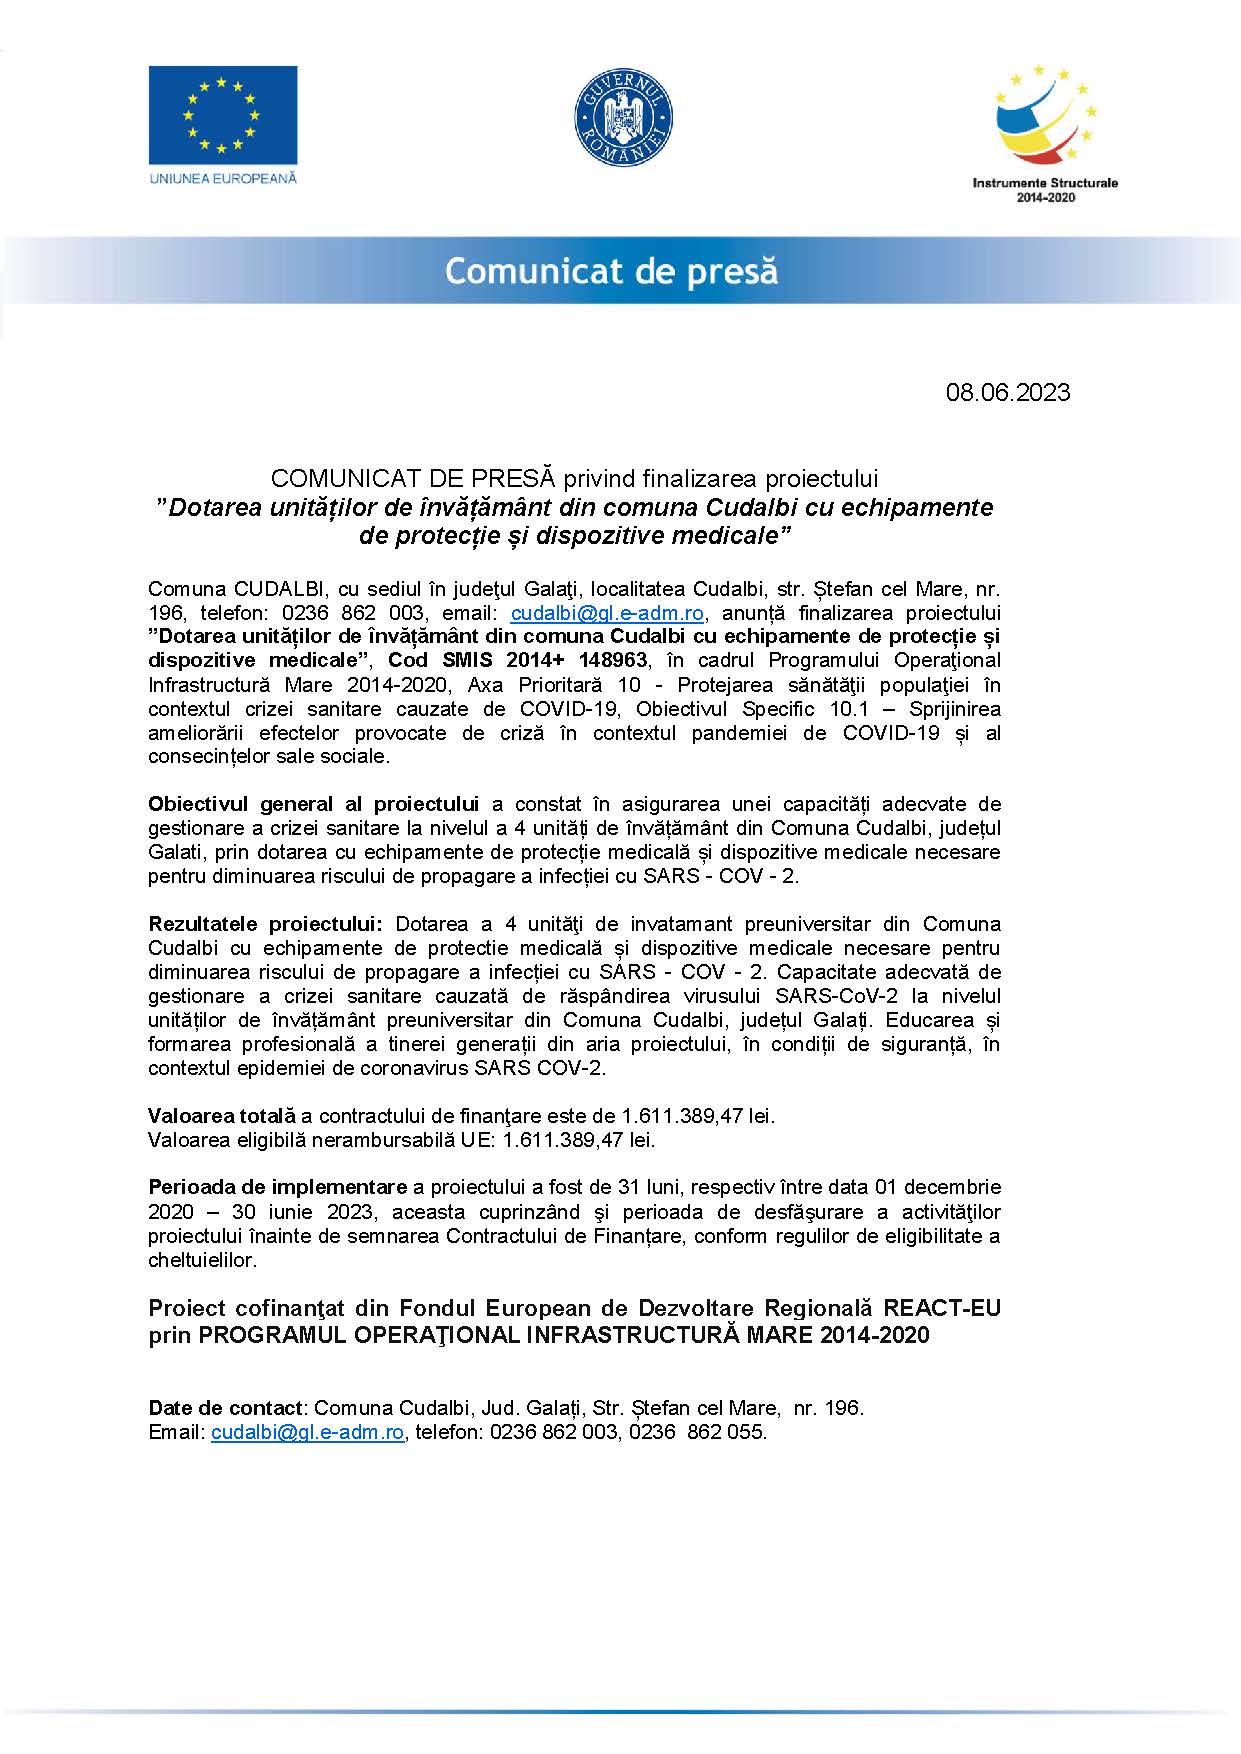 COMUNICAT DE PRESĂ privind finalizarea proiectului ”Dotarea unităților de învățământ din comuna Cudalbi cu echipamente de protecție și dispozitive medicale” 08.06.2023